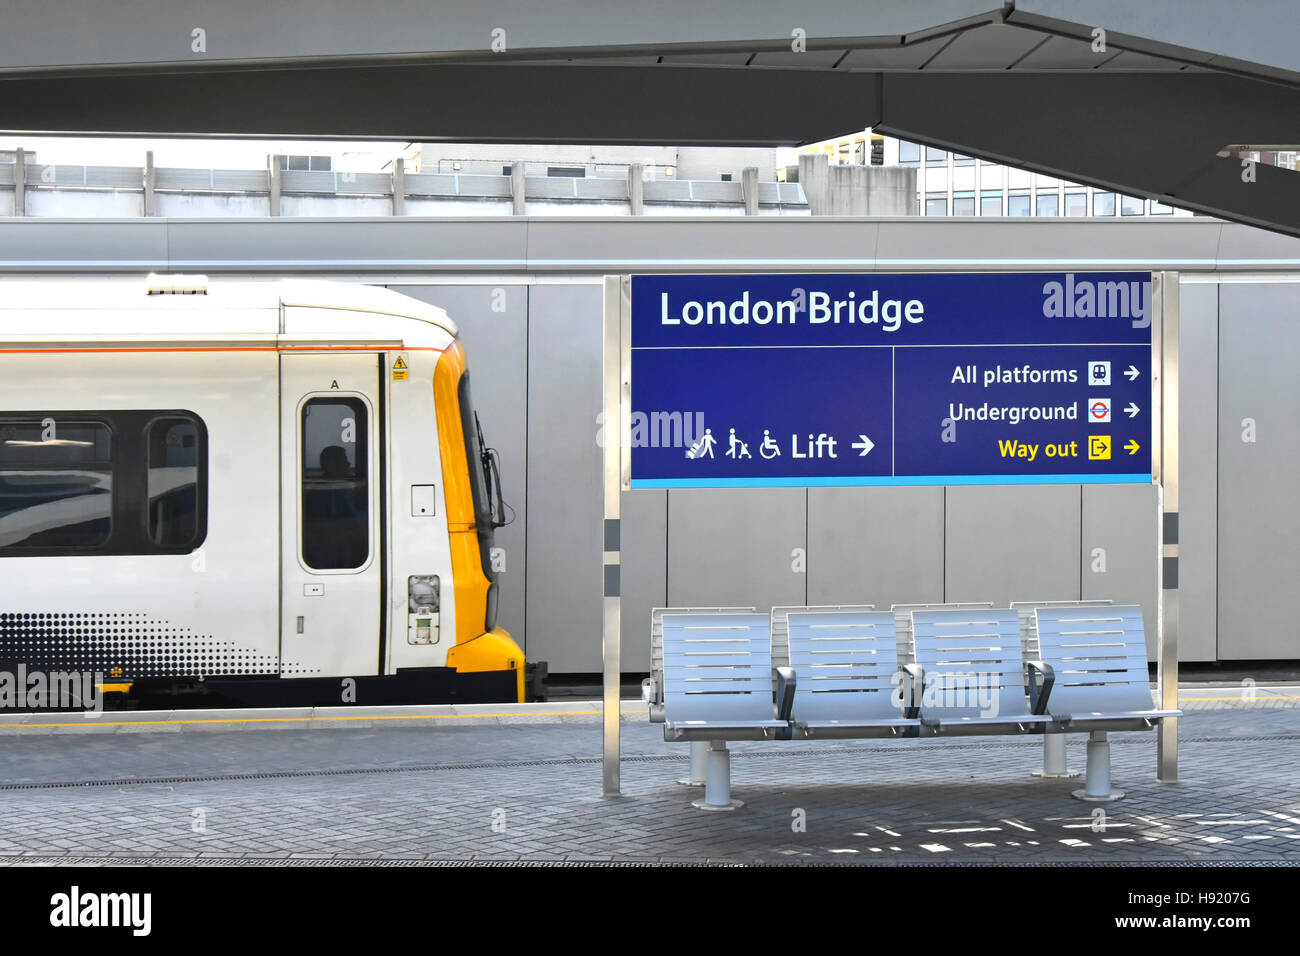 Train arrivant en rénovation des installations de la plate-forme à la gare de London Bridge, dans le cadre d'un important projet de reconstruction des infrastructures de transport public Banque D'Images